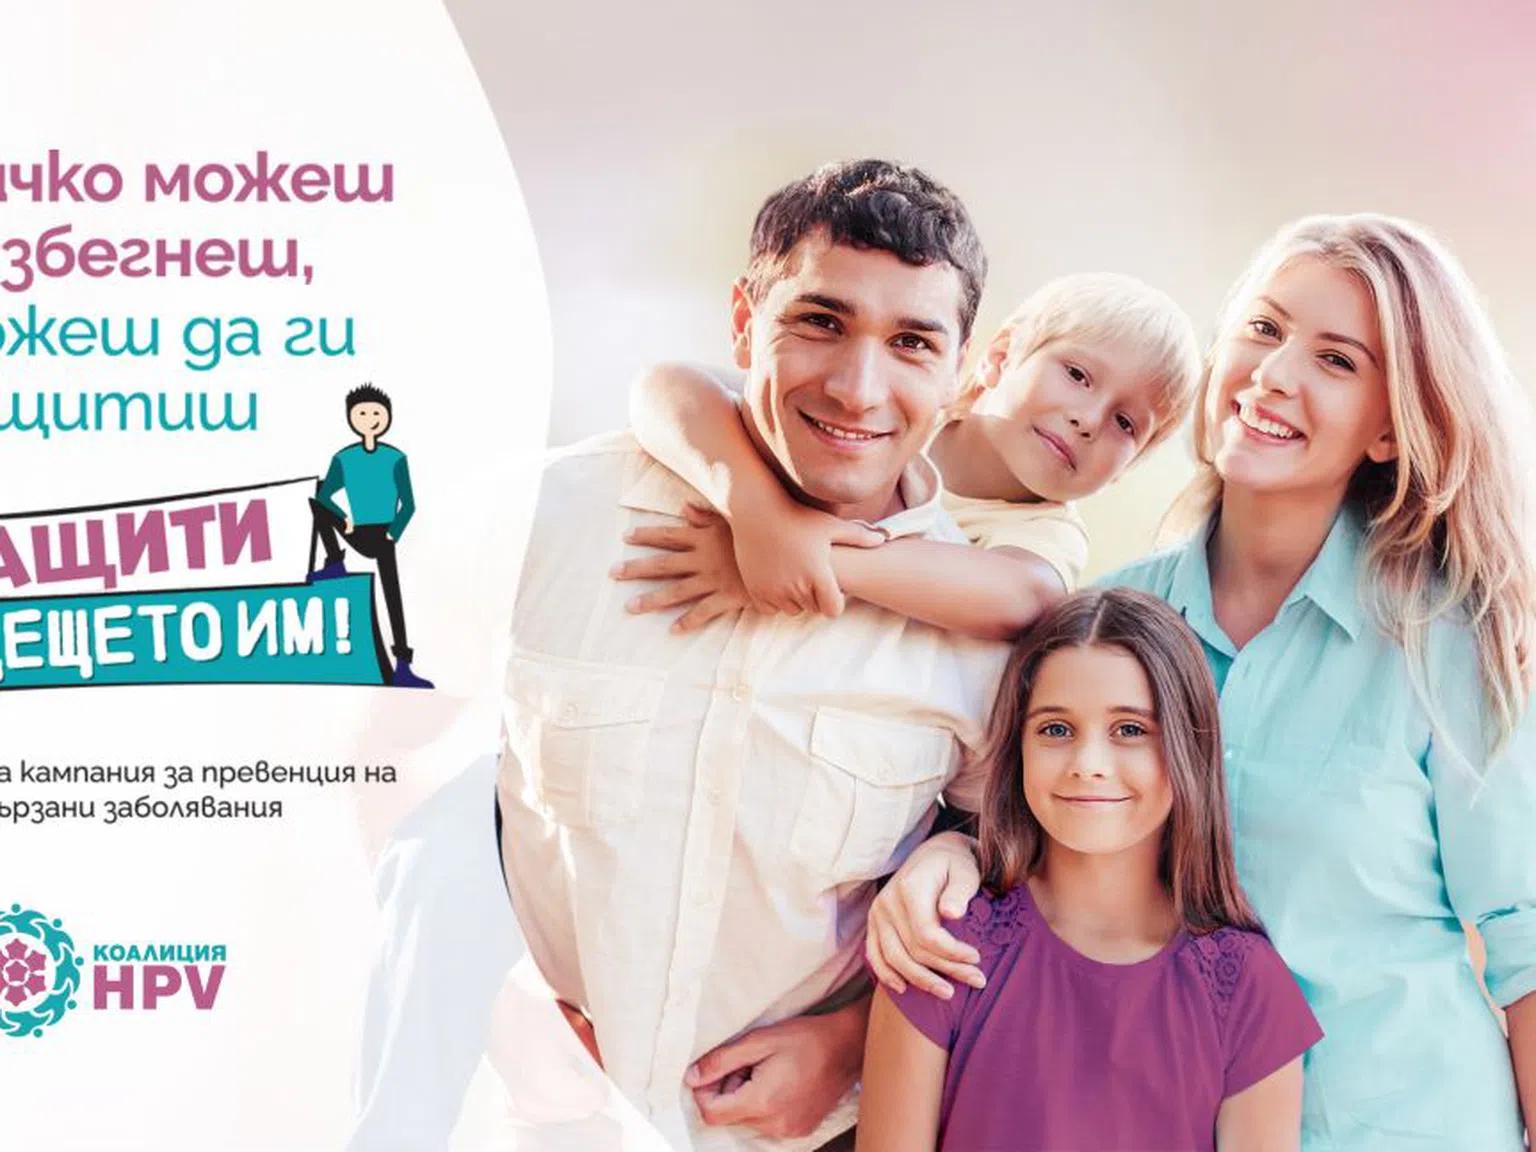 Най-иновативната защита срещу HPV вече достъпна и в България по Национална програма за първична профилактика на рака на маточната шийка